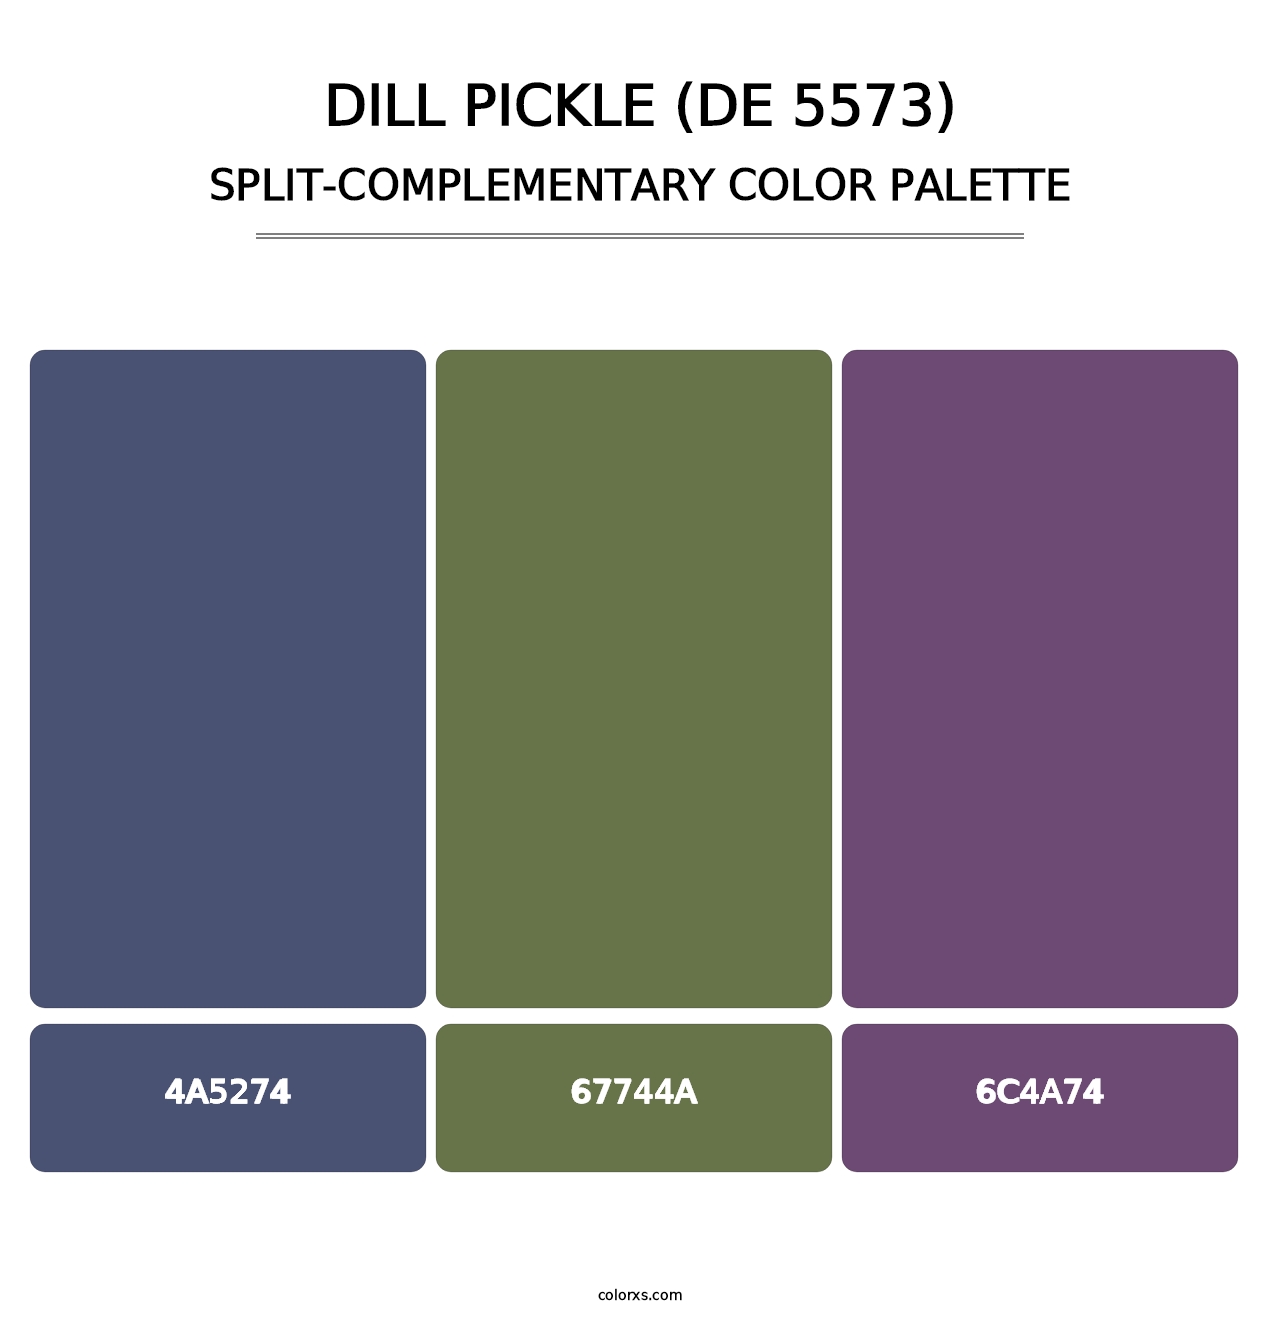 Dill Pickle (DE 5573) - Split-Complementary Color Palette